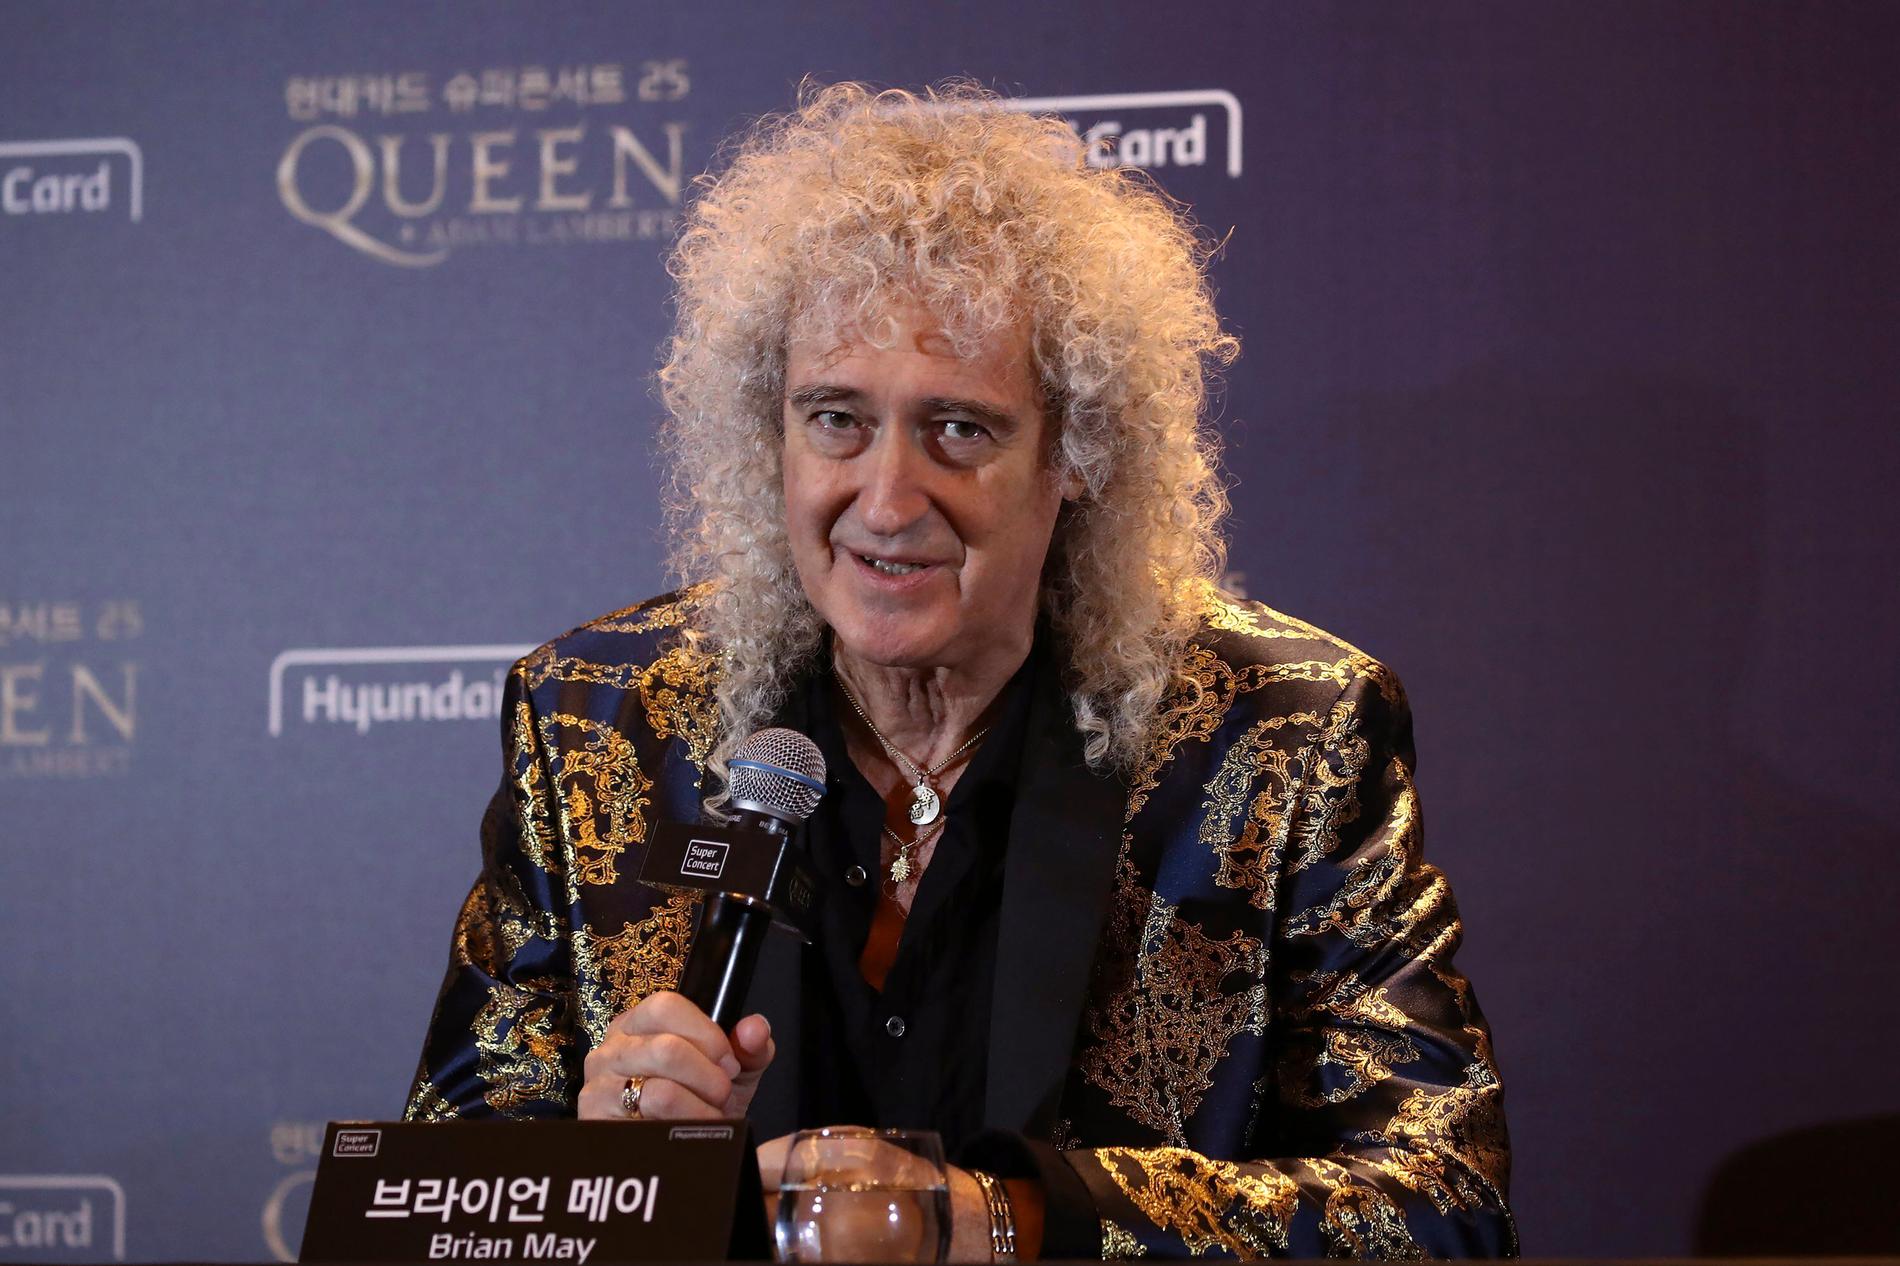 Brian May i Queen skriver att hans hjärta är lika öppet som alltid för alla variationer av sexualitet och hudfärg. Arkivbild.